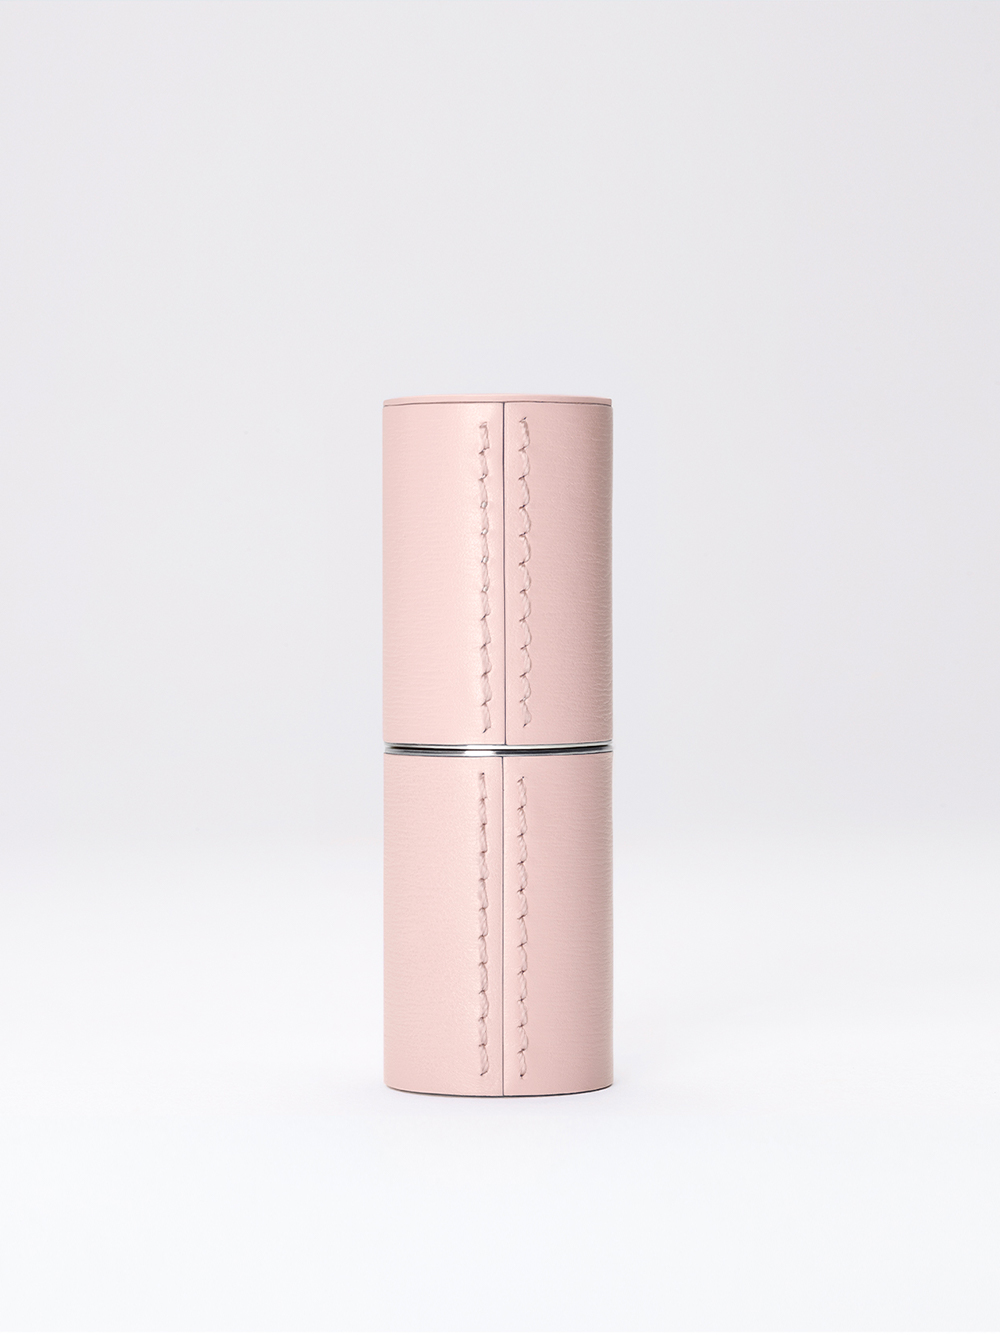 Pink leather case - La bouche rouge, Paris